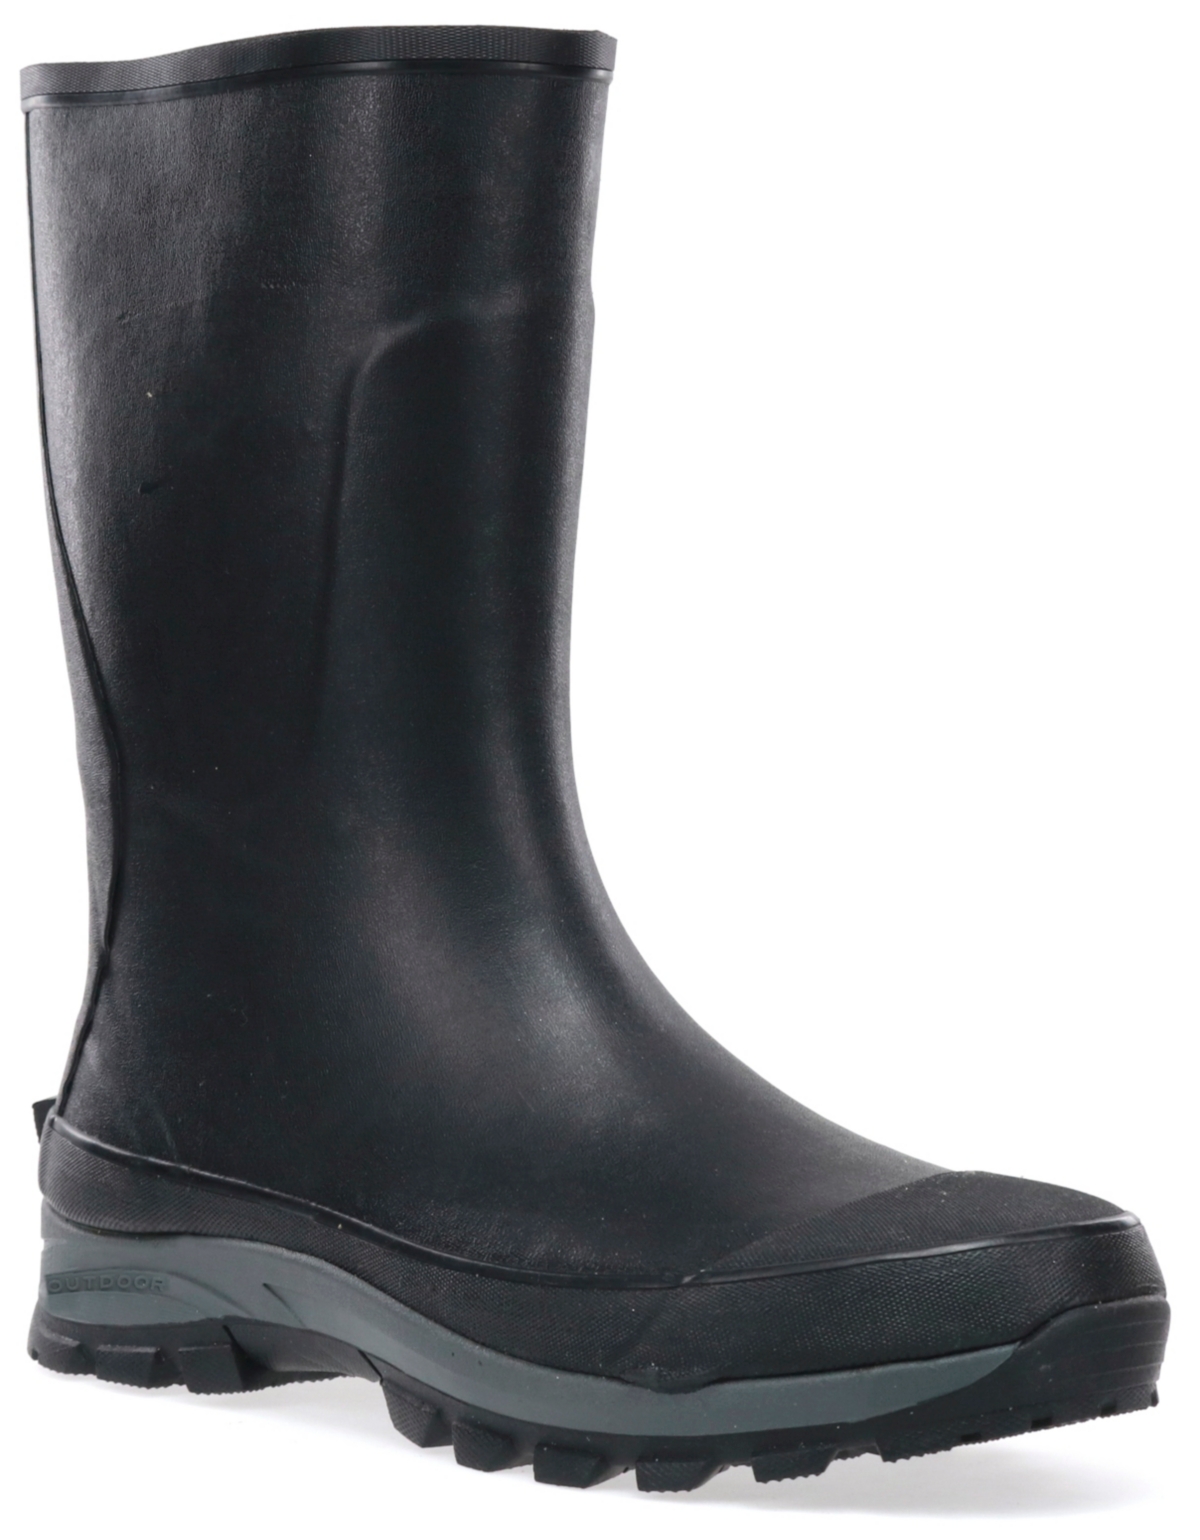 Men's Premium Rain Boot - Black